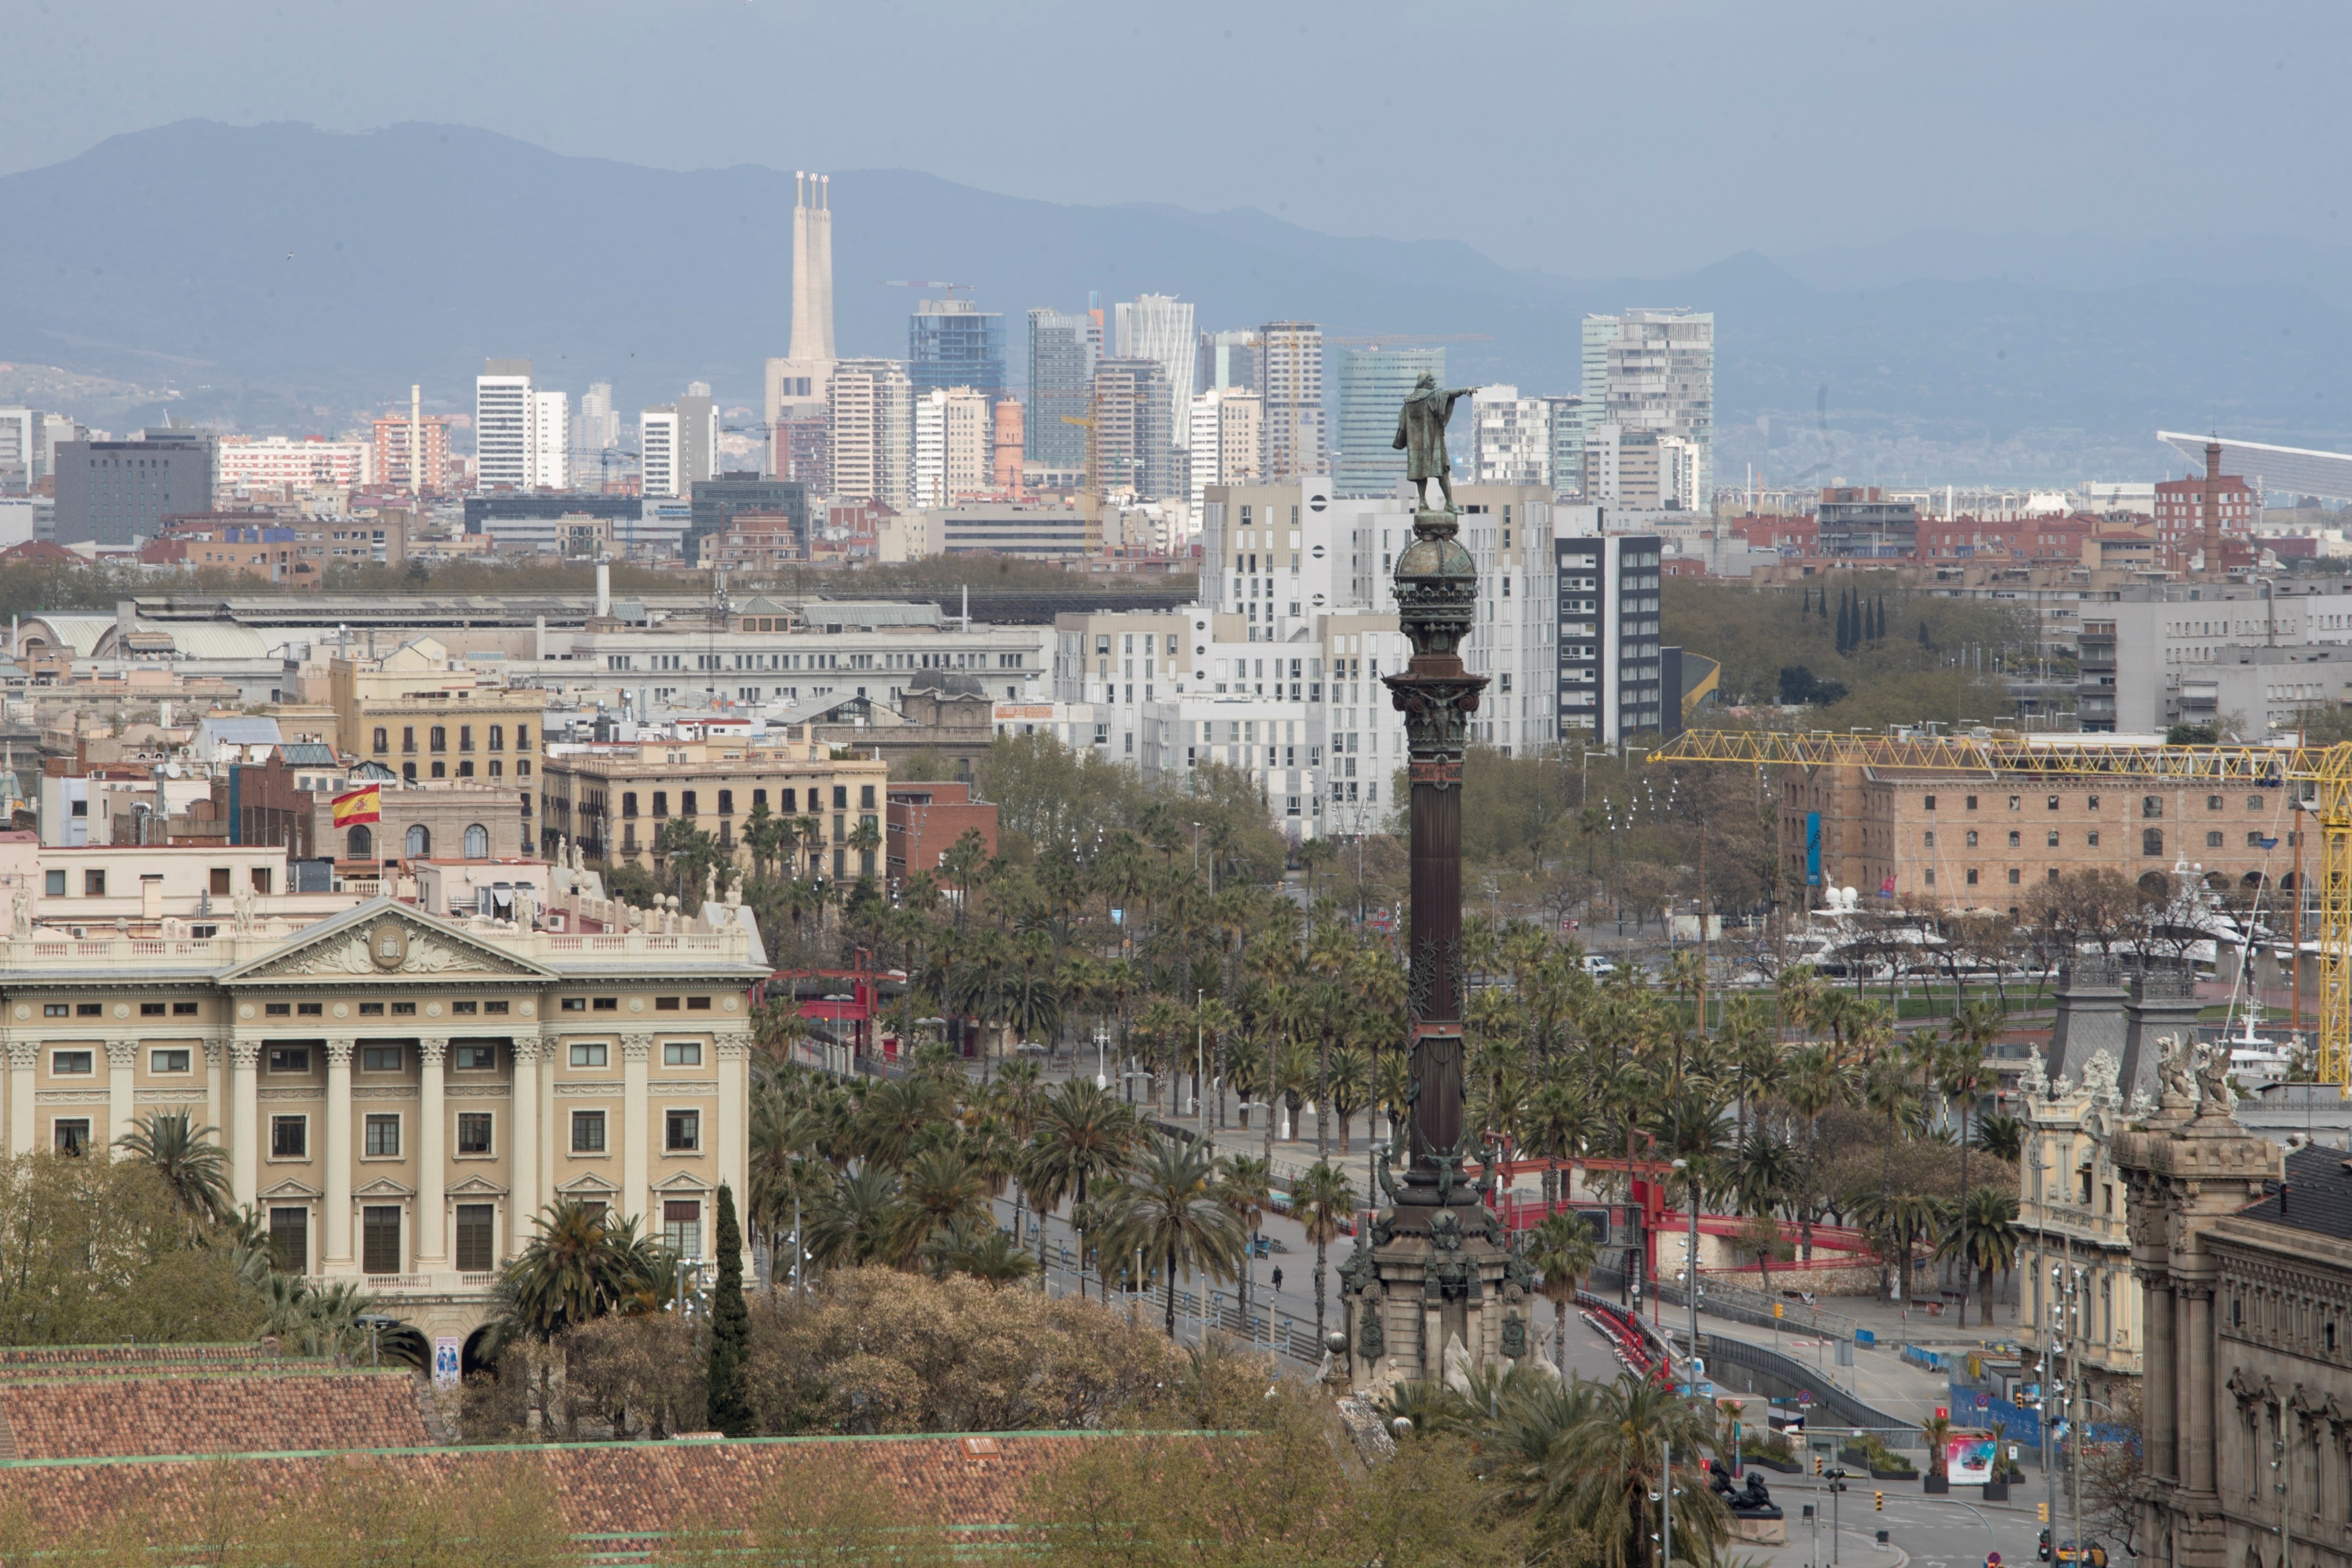 Barcelona ciutat s'obre: des de dilluns, mobilitat lliure a l'àrea metropolitana